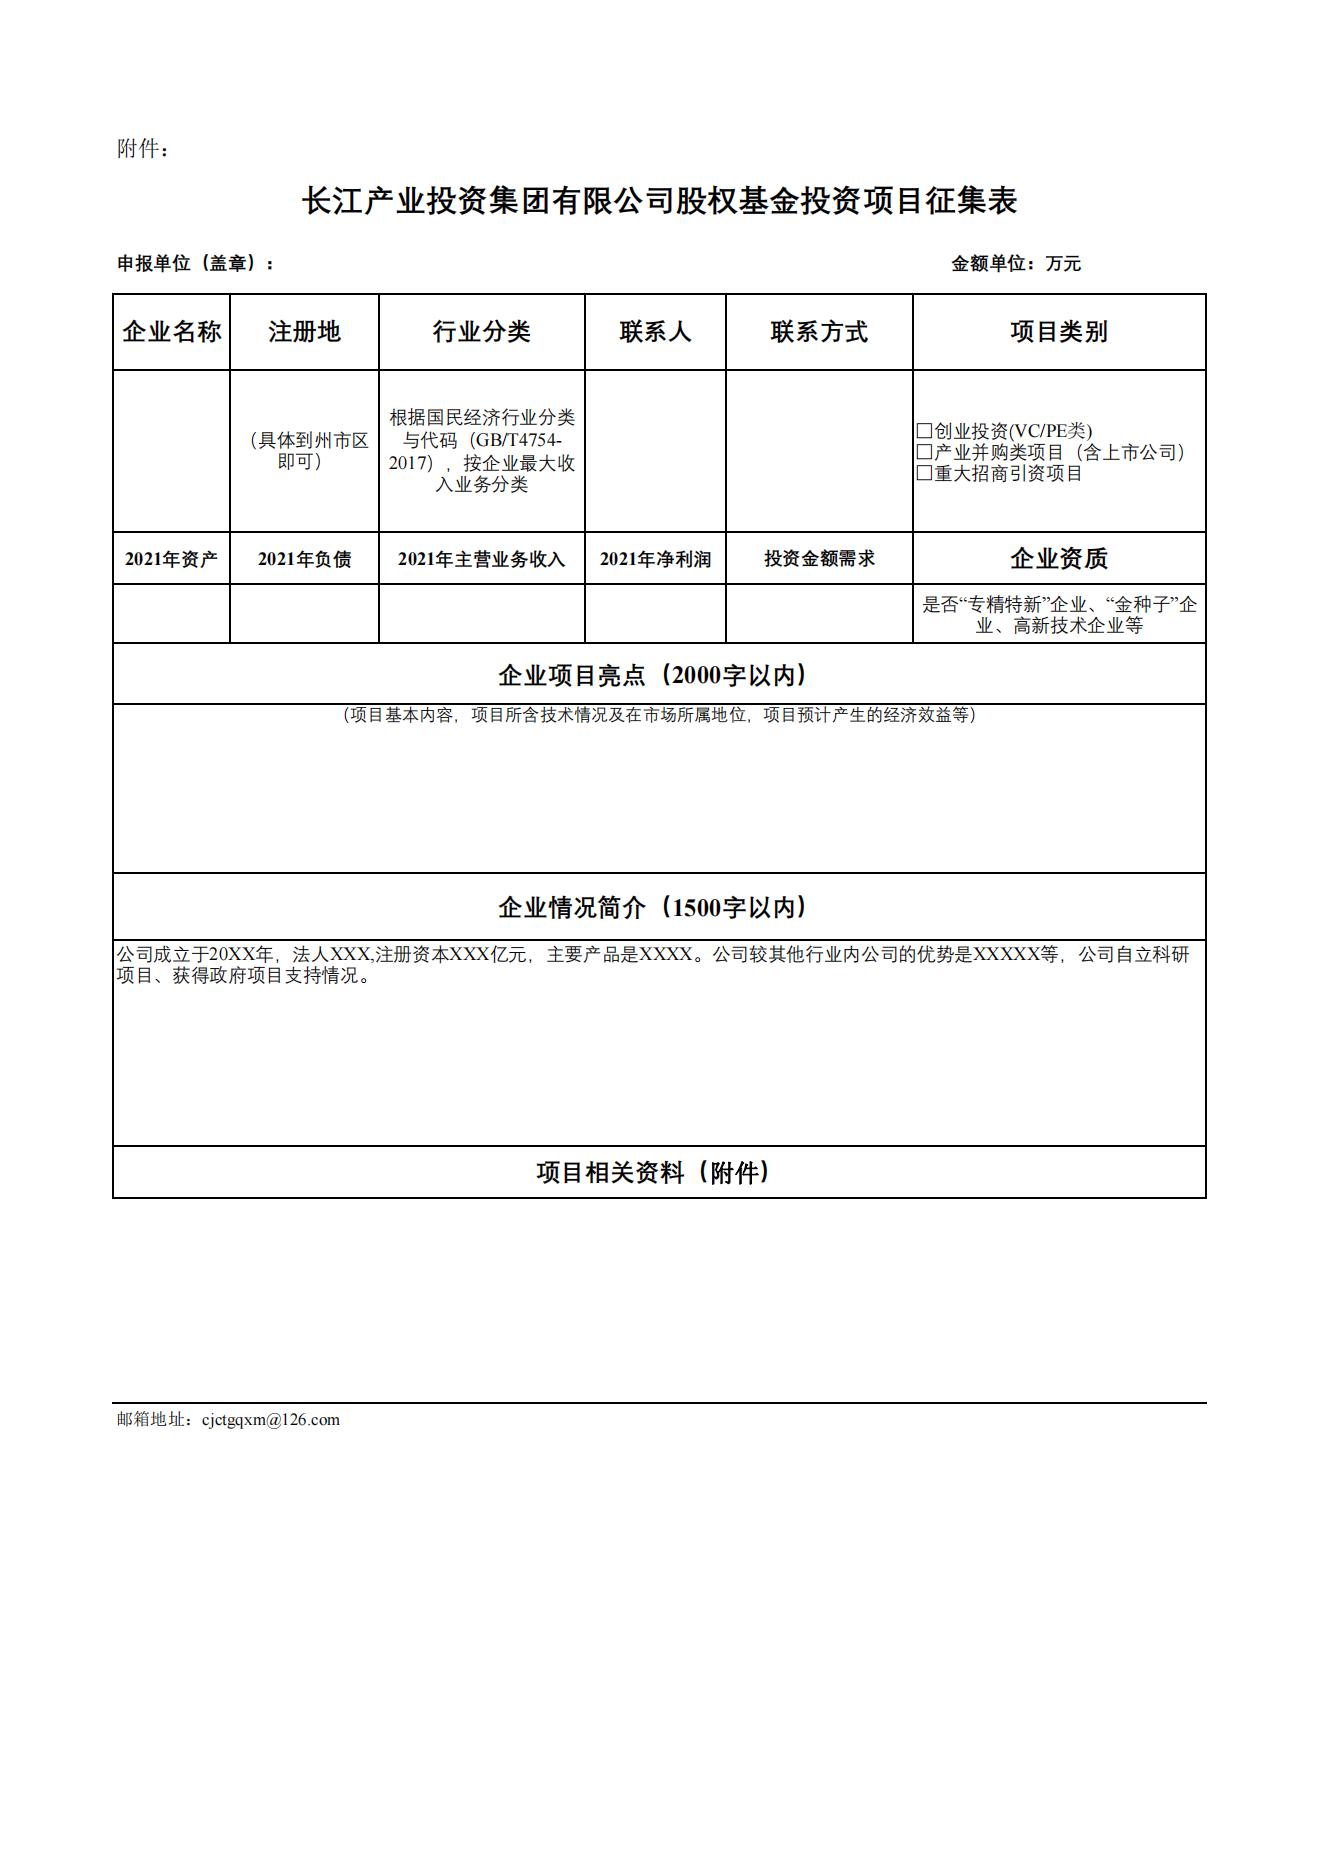 长江产业投资集团有限公司关于征集股权基金投资项目的公告_03.jpg